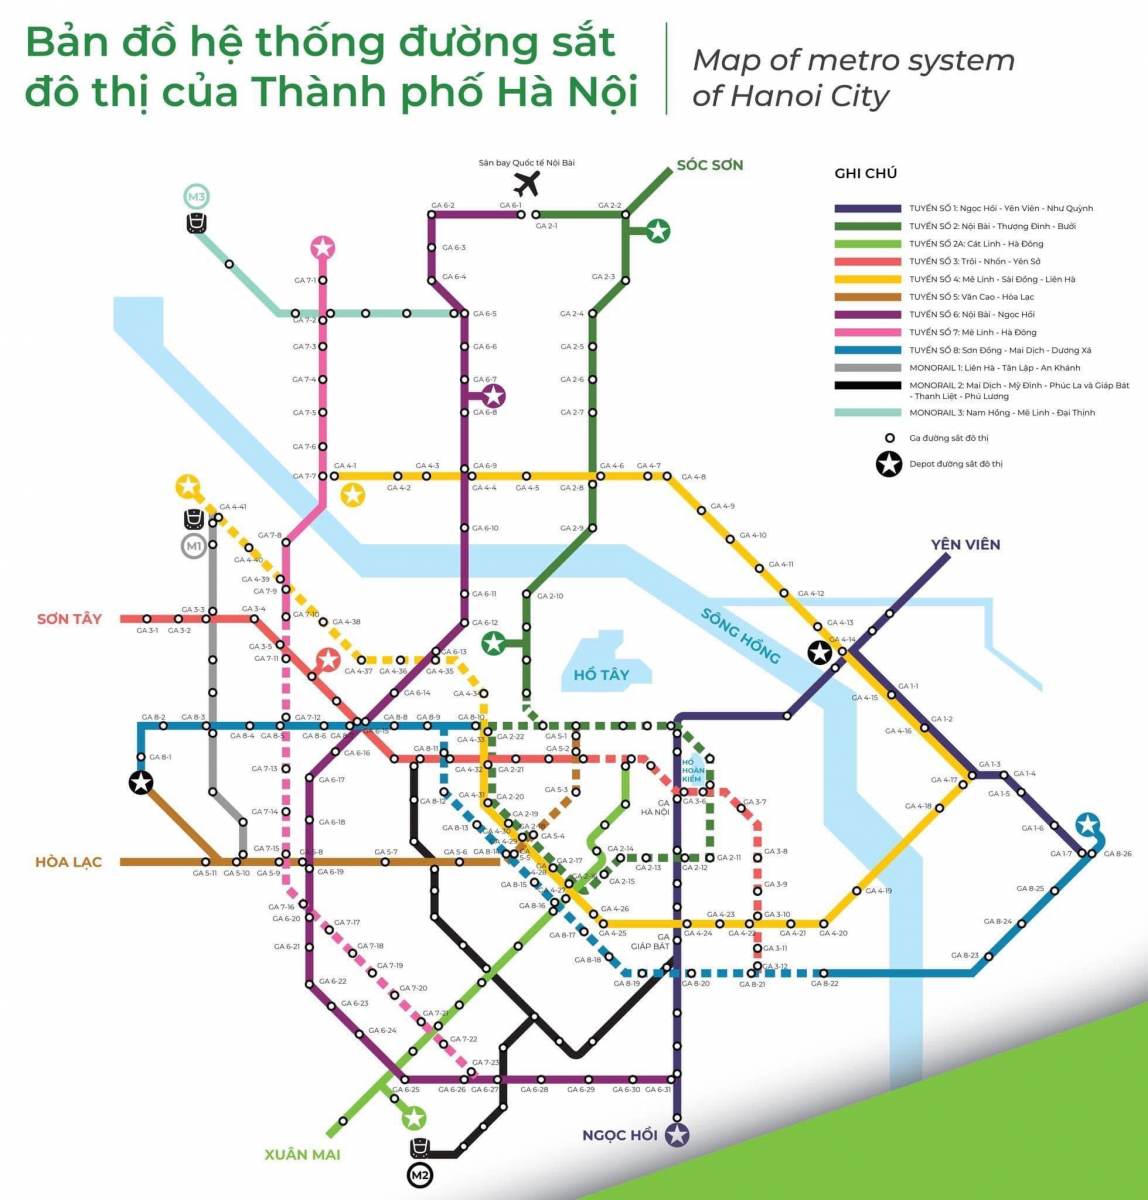 Mạng lưới đường sắt đô thị tại Hà Nội